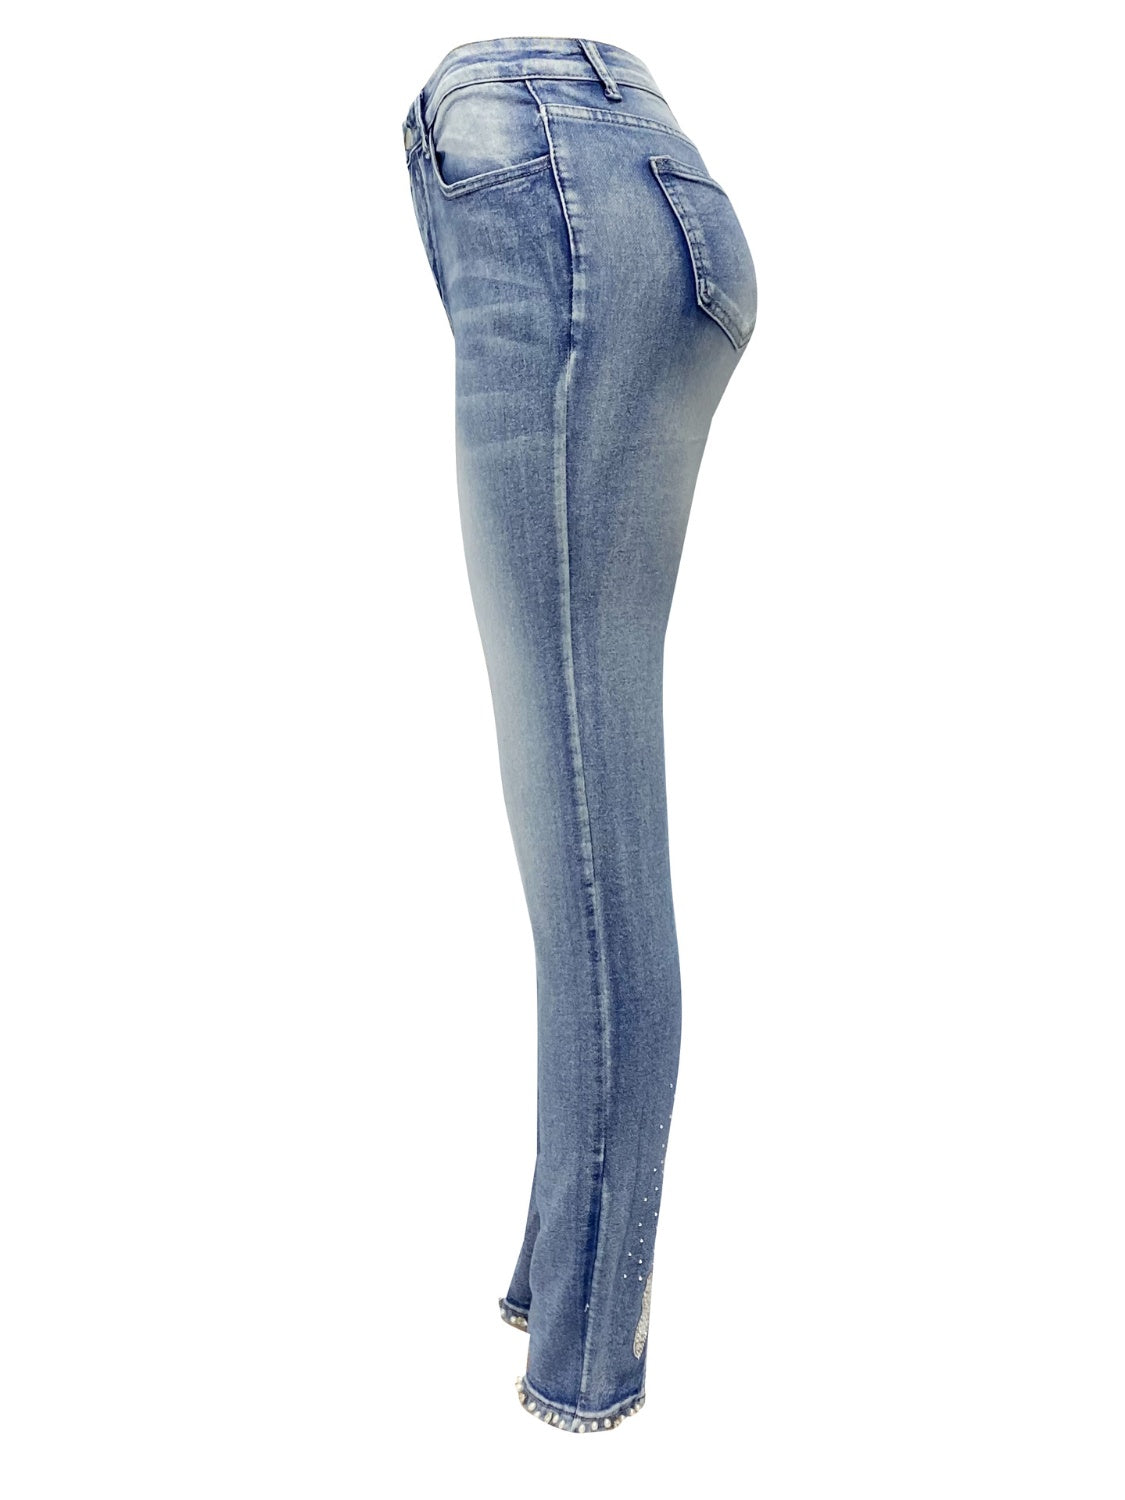 Rhinestone Skinny Women Jeans with Pockets